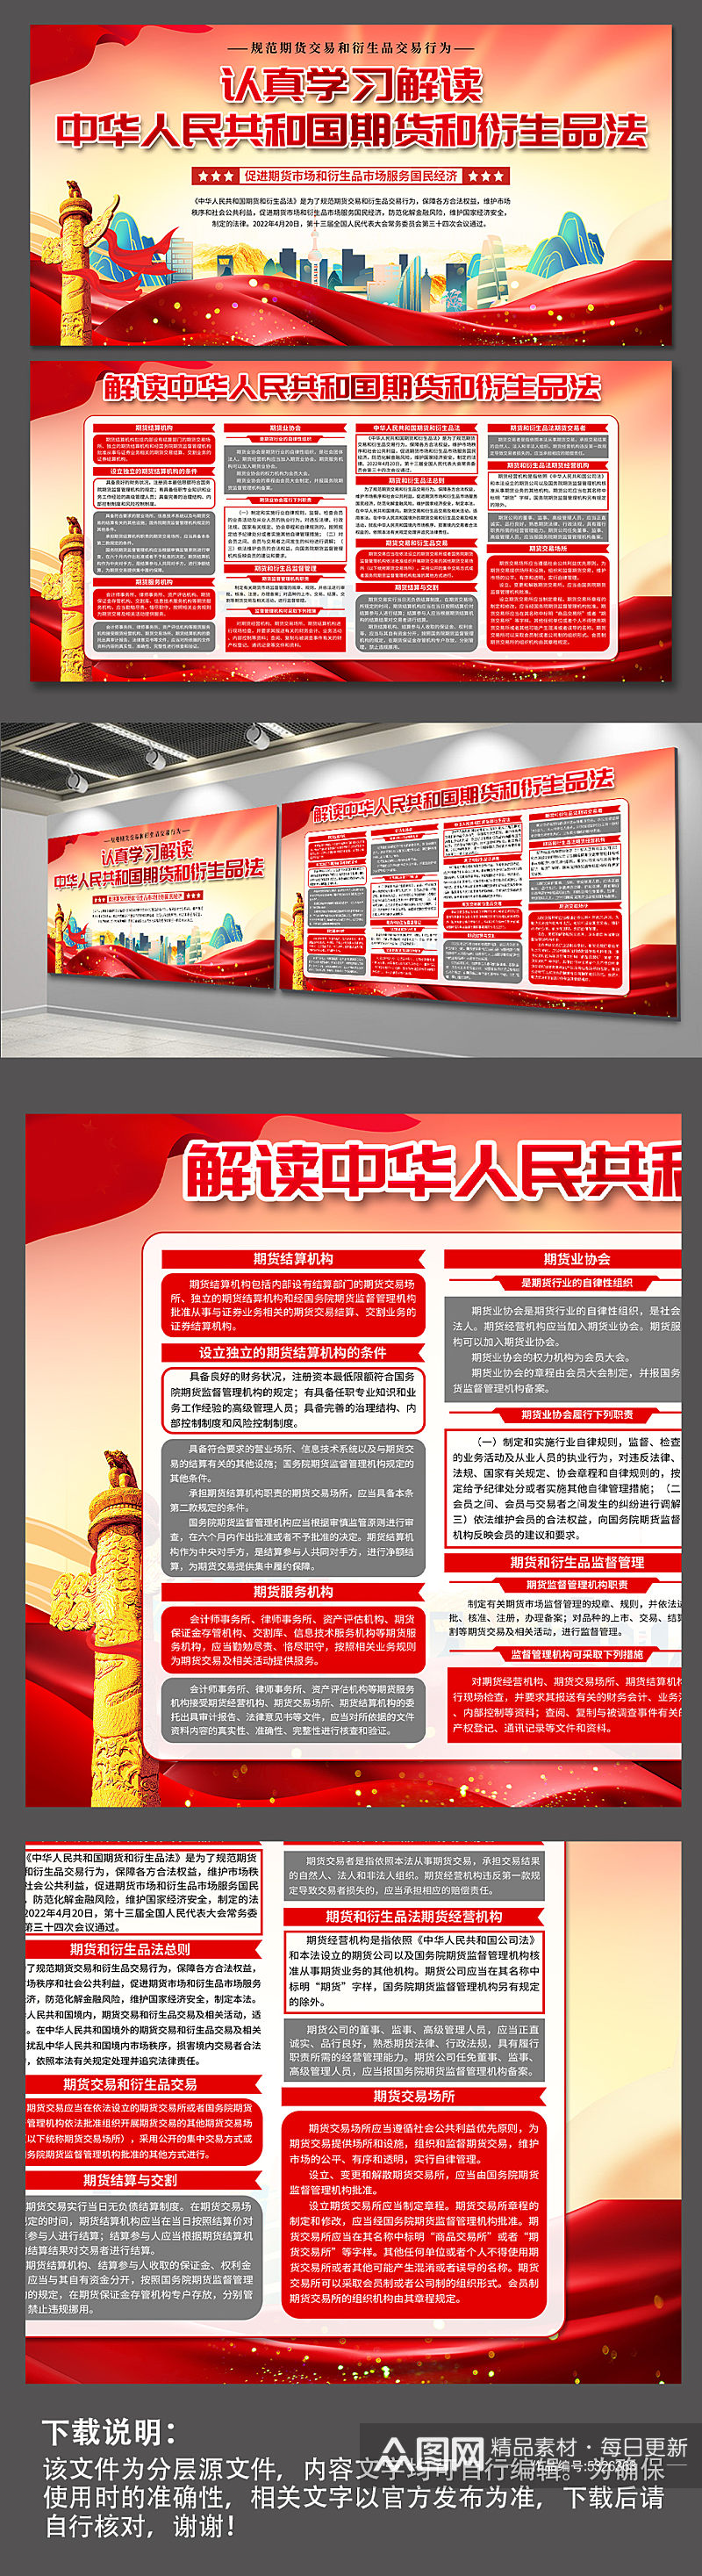 红色中华人民共和国期货和衍生品法党建展板素材